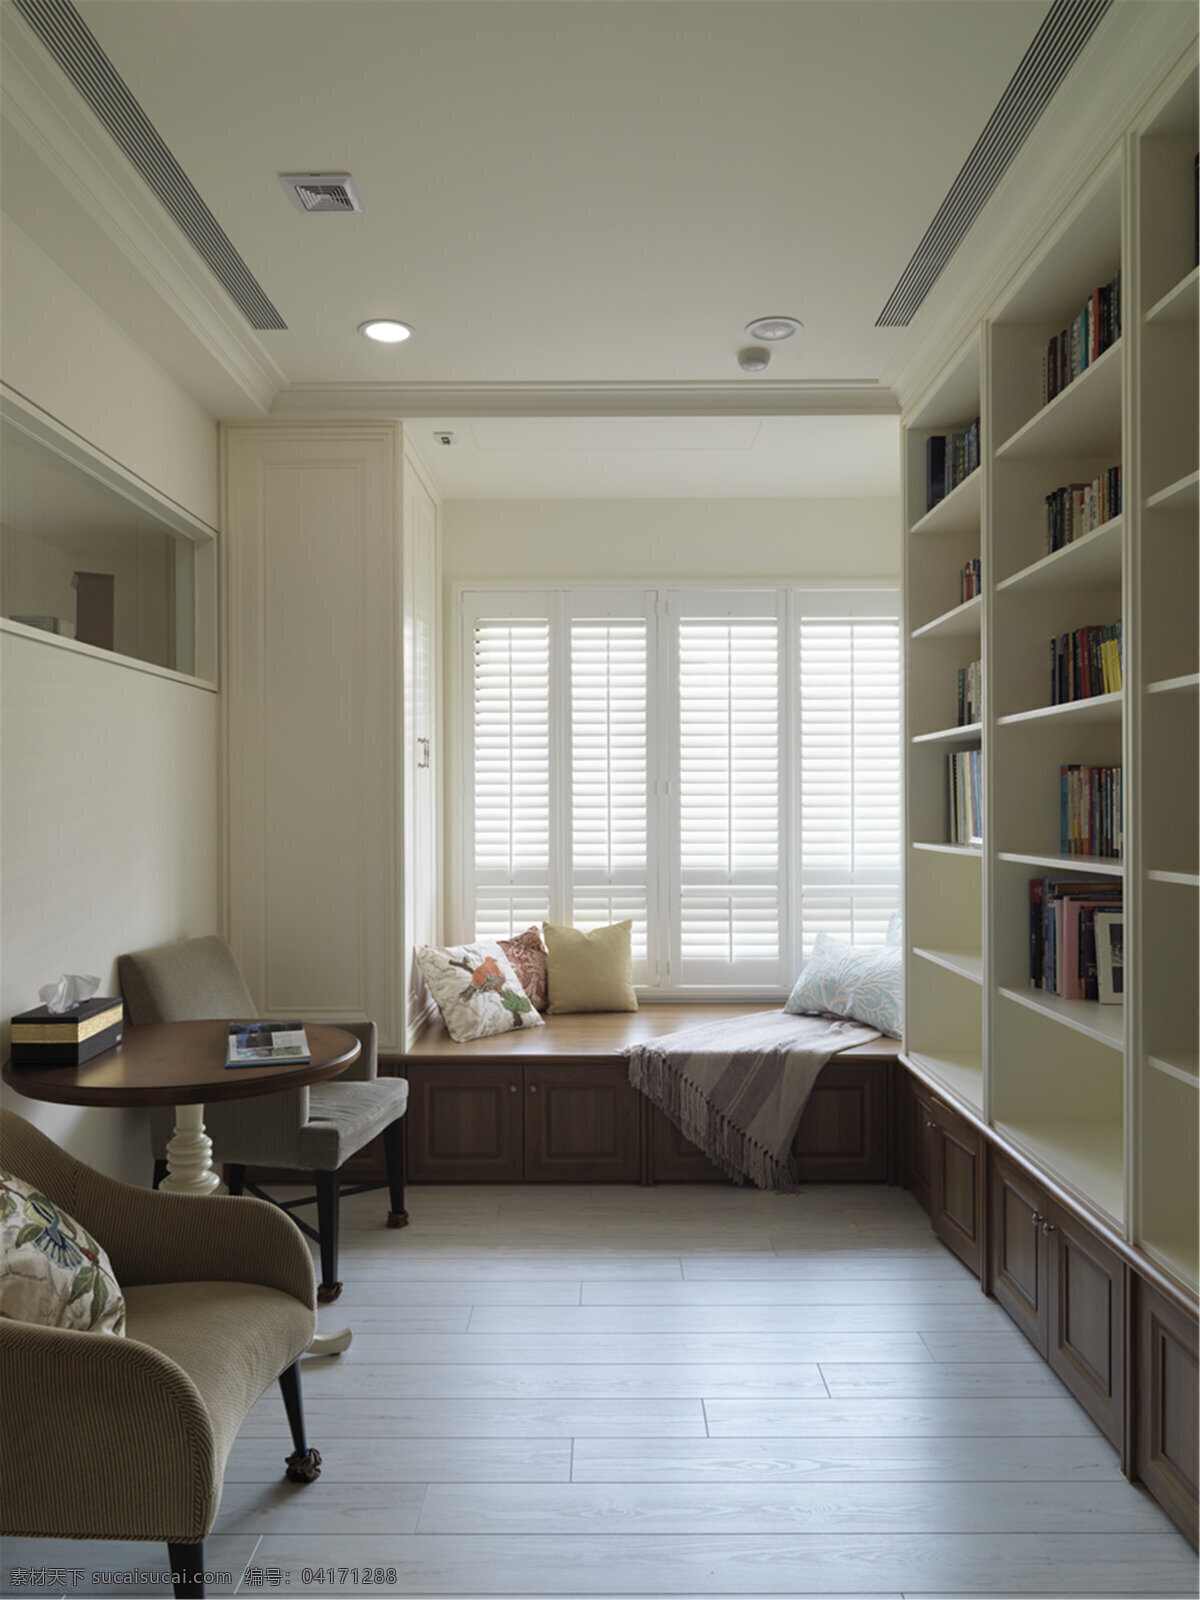 美式 简约 书房 书柜 窗户 设计图 家居 家居生活 室内设计 装修 室内 家具 装修设计 环境设计